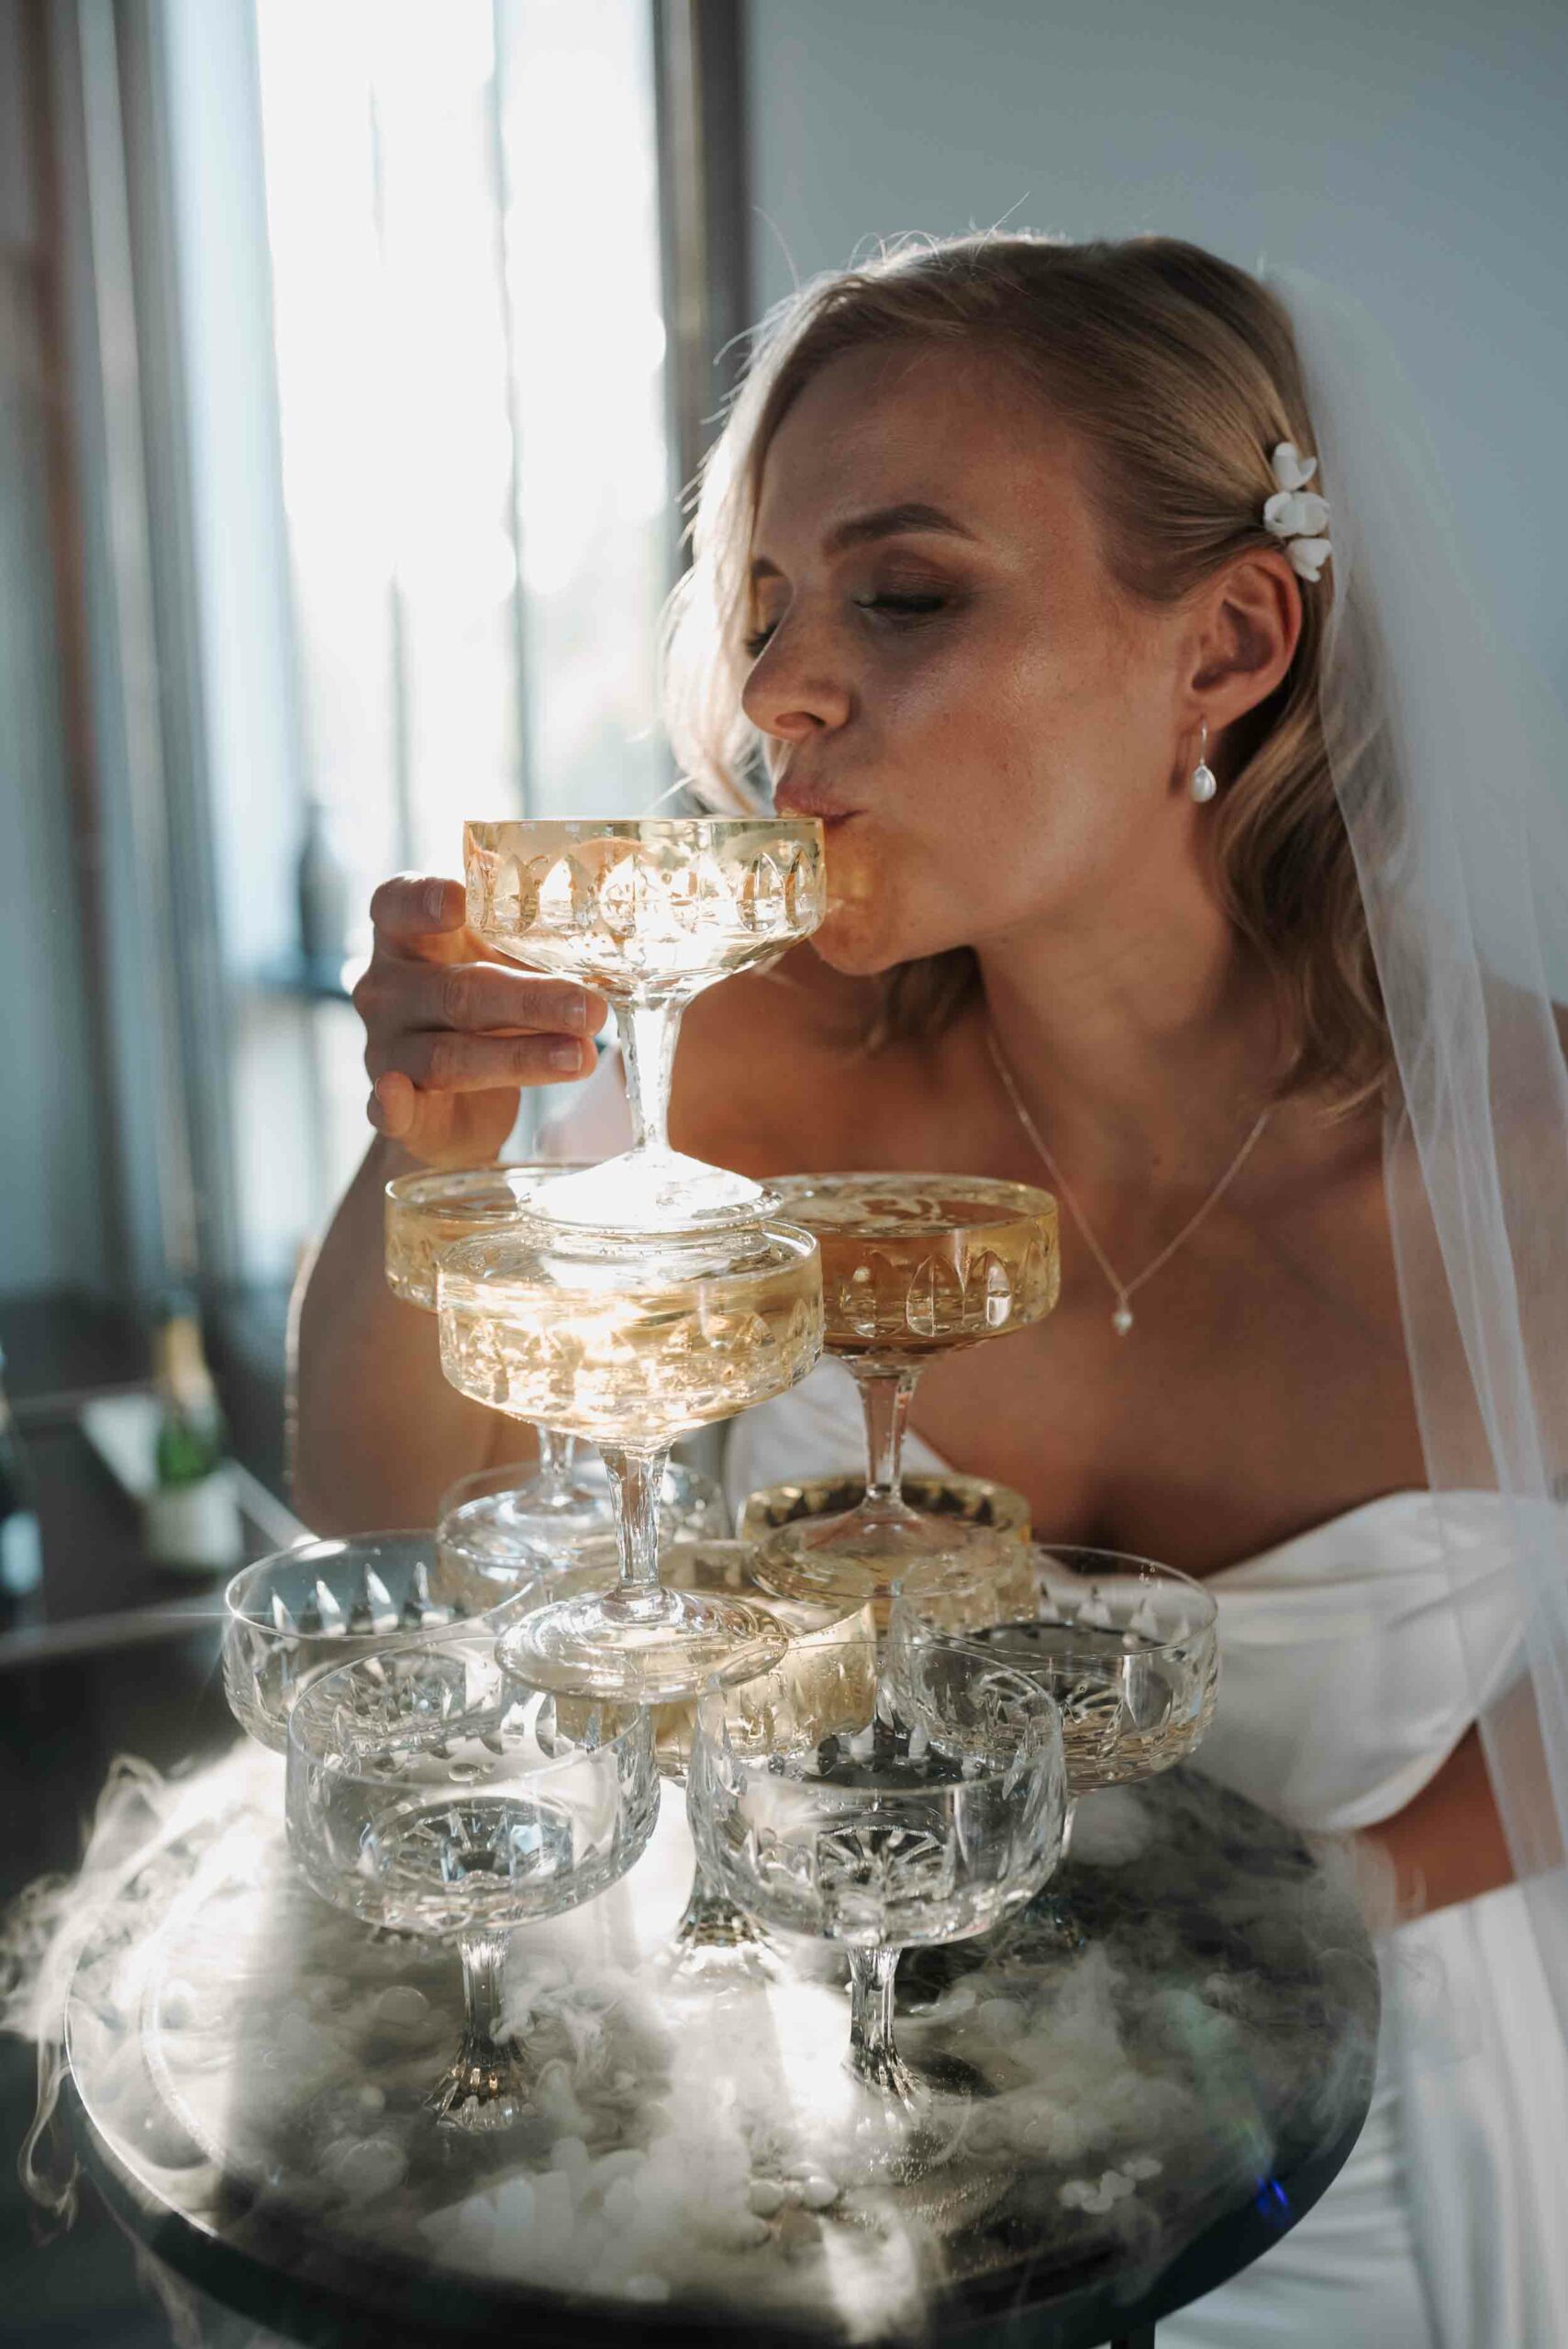 Eine Braut in einem weißen Kleid und Schleier genießt einen Drink aus einem eleganten Turm aus Champagnergläsern. Die gläsernen Kelche sind mit goldenem Sekt gefüllt und fangen das Licht der Umgebung ein, was dem Moment eine glamouröse Atmosphäre verleiht. Das Foto wurde aufgenommen auf einer Hochzeit in Hamburg.